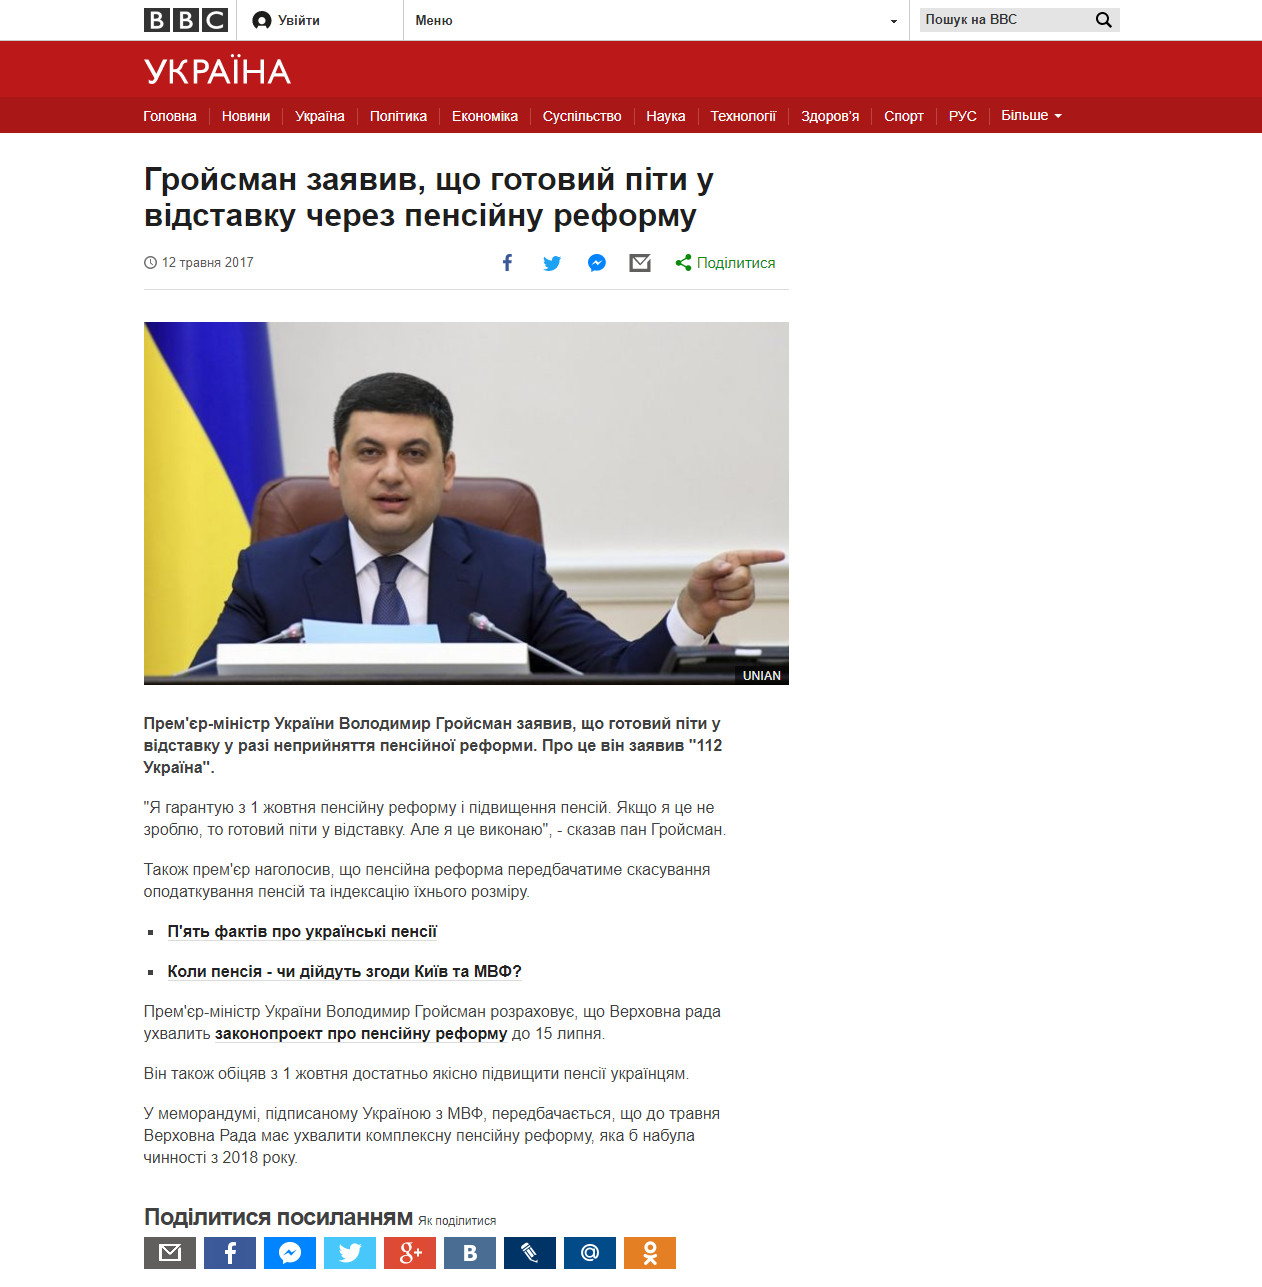 http://www.bbc.com/ukrainian/news-39900268